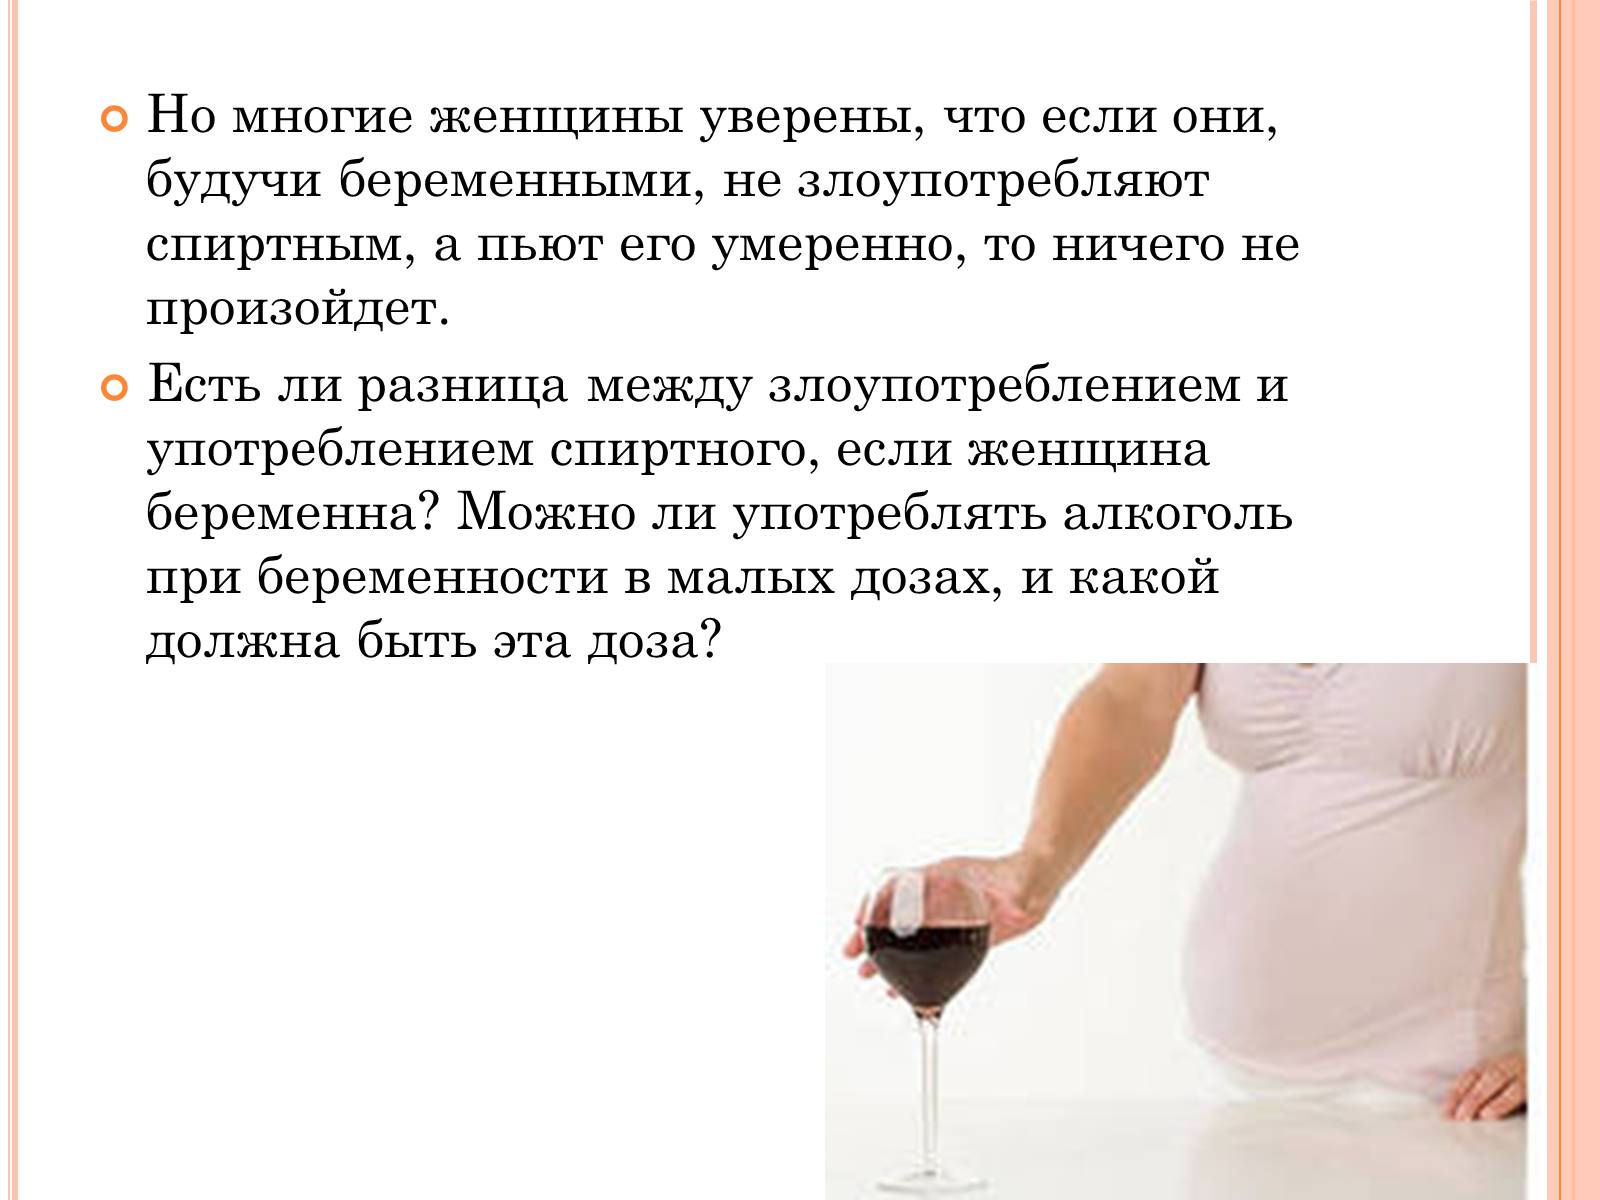 Месячные хочется пить. Алкоголь при беременности. Употребление спиртного при беременности. Что можно пить при беременности алкоголь.